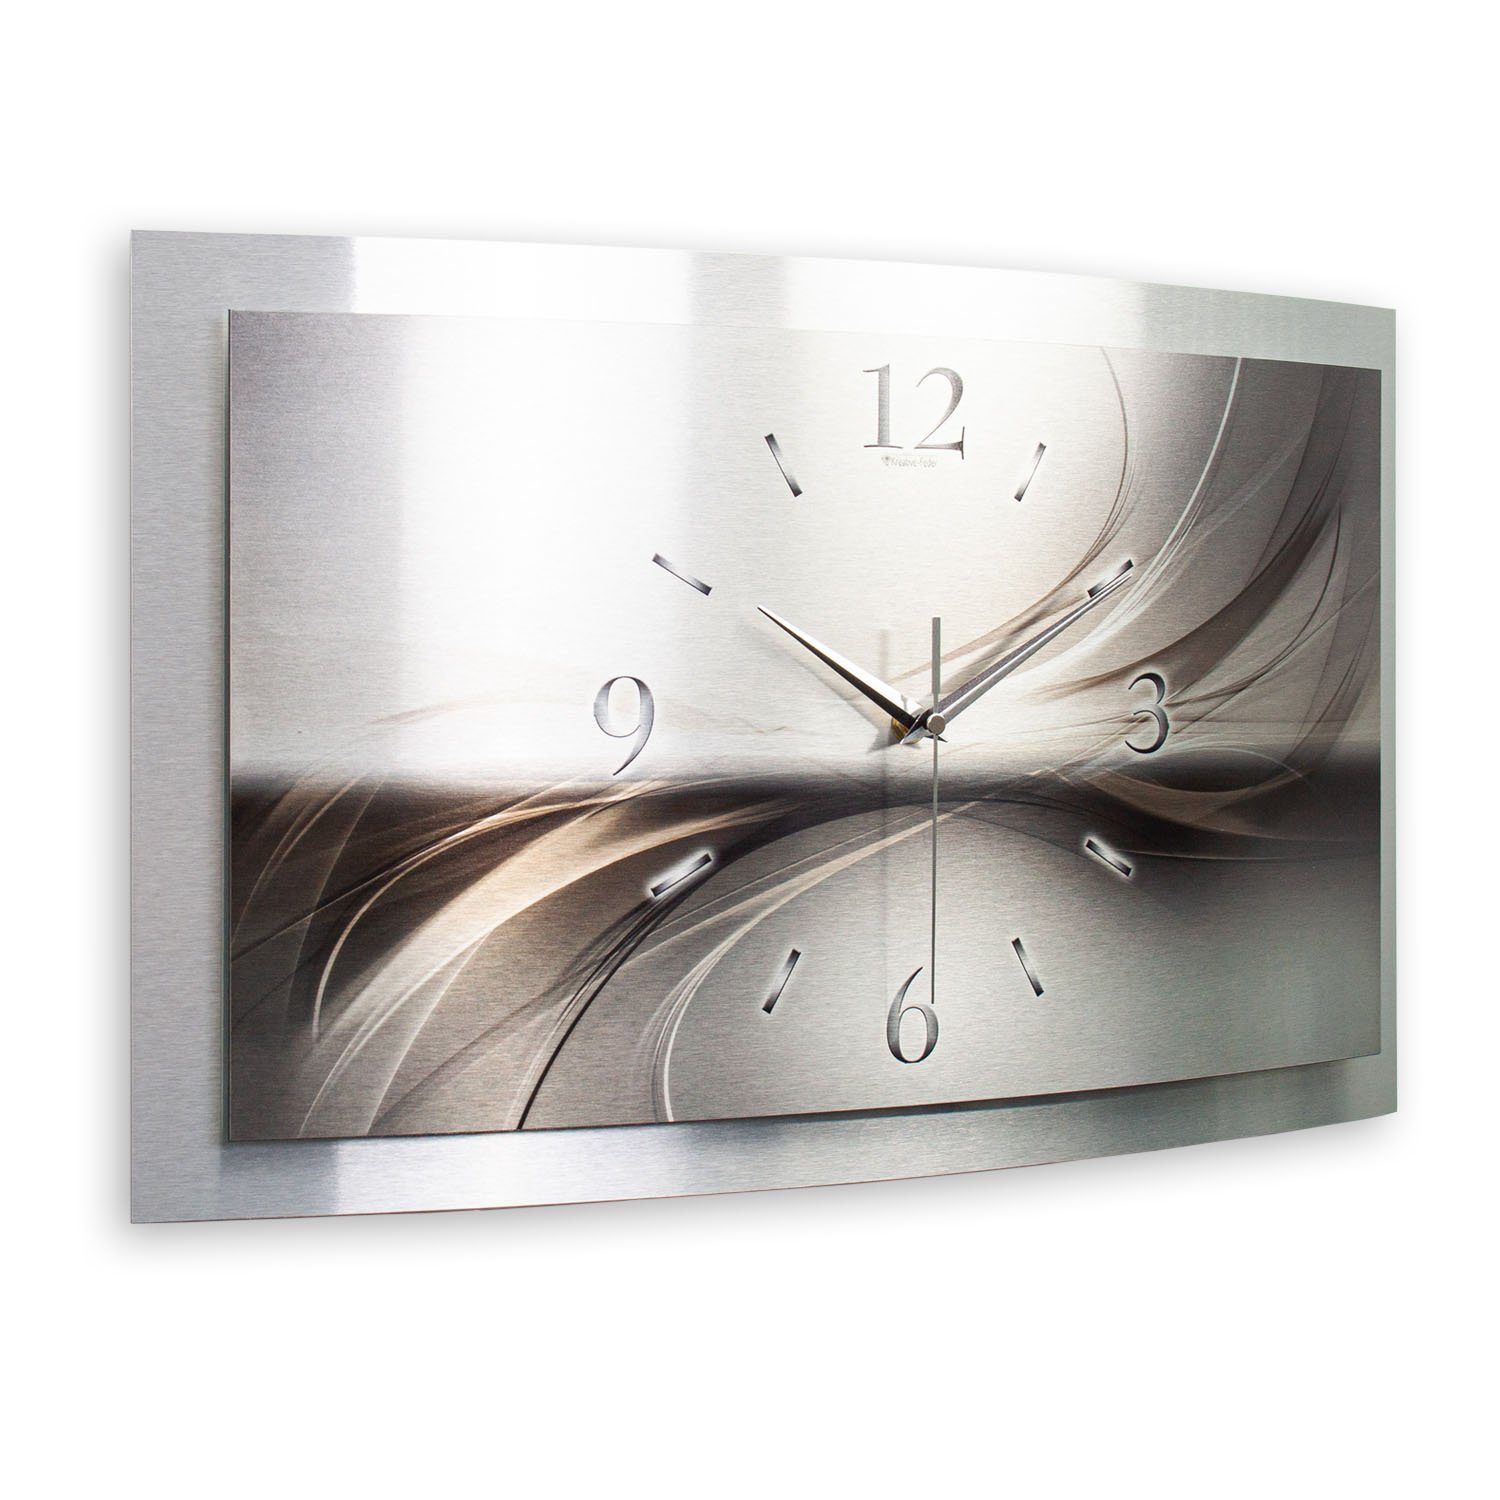 Zwei-Platten-Design; aus Kreative Aluminium 3D gebürstetem Feder flüsterleises Uhrwerk) „Silverline“ Designer-Wanduhr Funkwanduhr (3D-Wölbung; einzigartiges